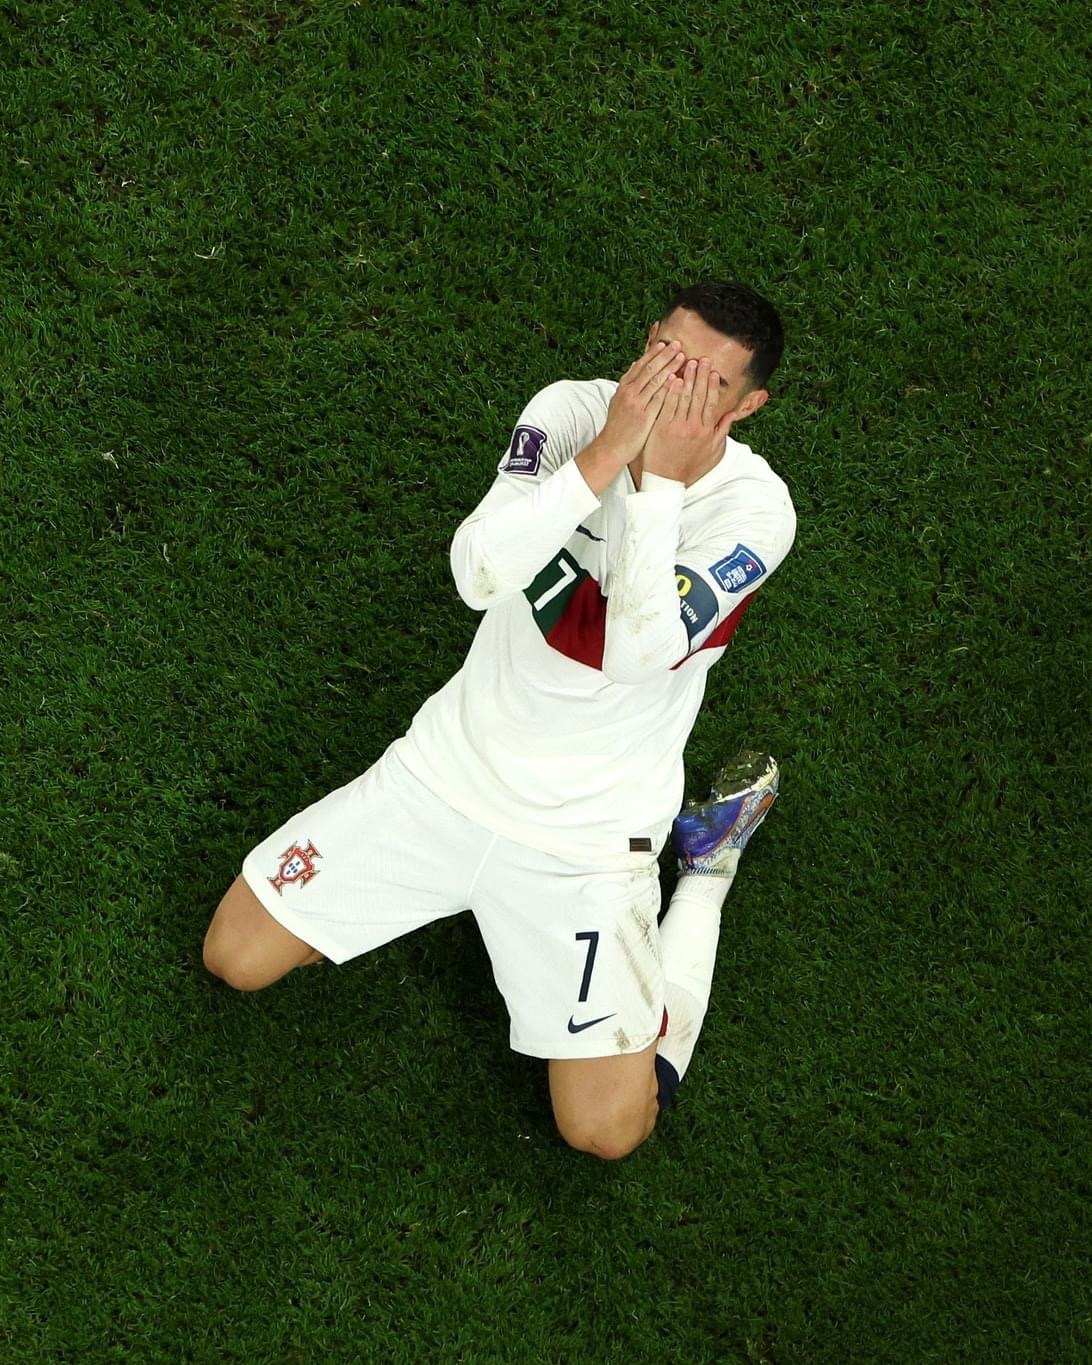 Ronaldo khóc buồn: Hình ảnh Ronaldo khóc buồn sẽ khiến bạn cảm thấy quan tâm và tò mò về tình cảm của siêu sao bóng đá này. Hãy xem hình ảnh để hiểu rõ hơn về những khó khăn và áp lực mà Ronaldo phải đối mặt trong sự nghiệp.